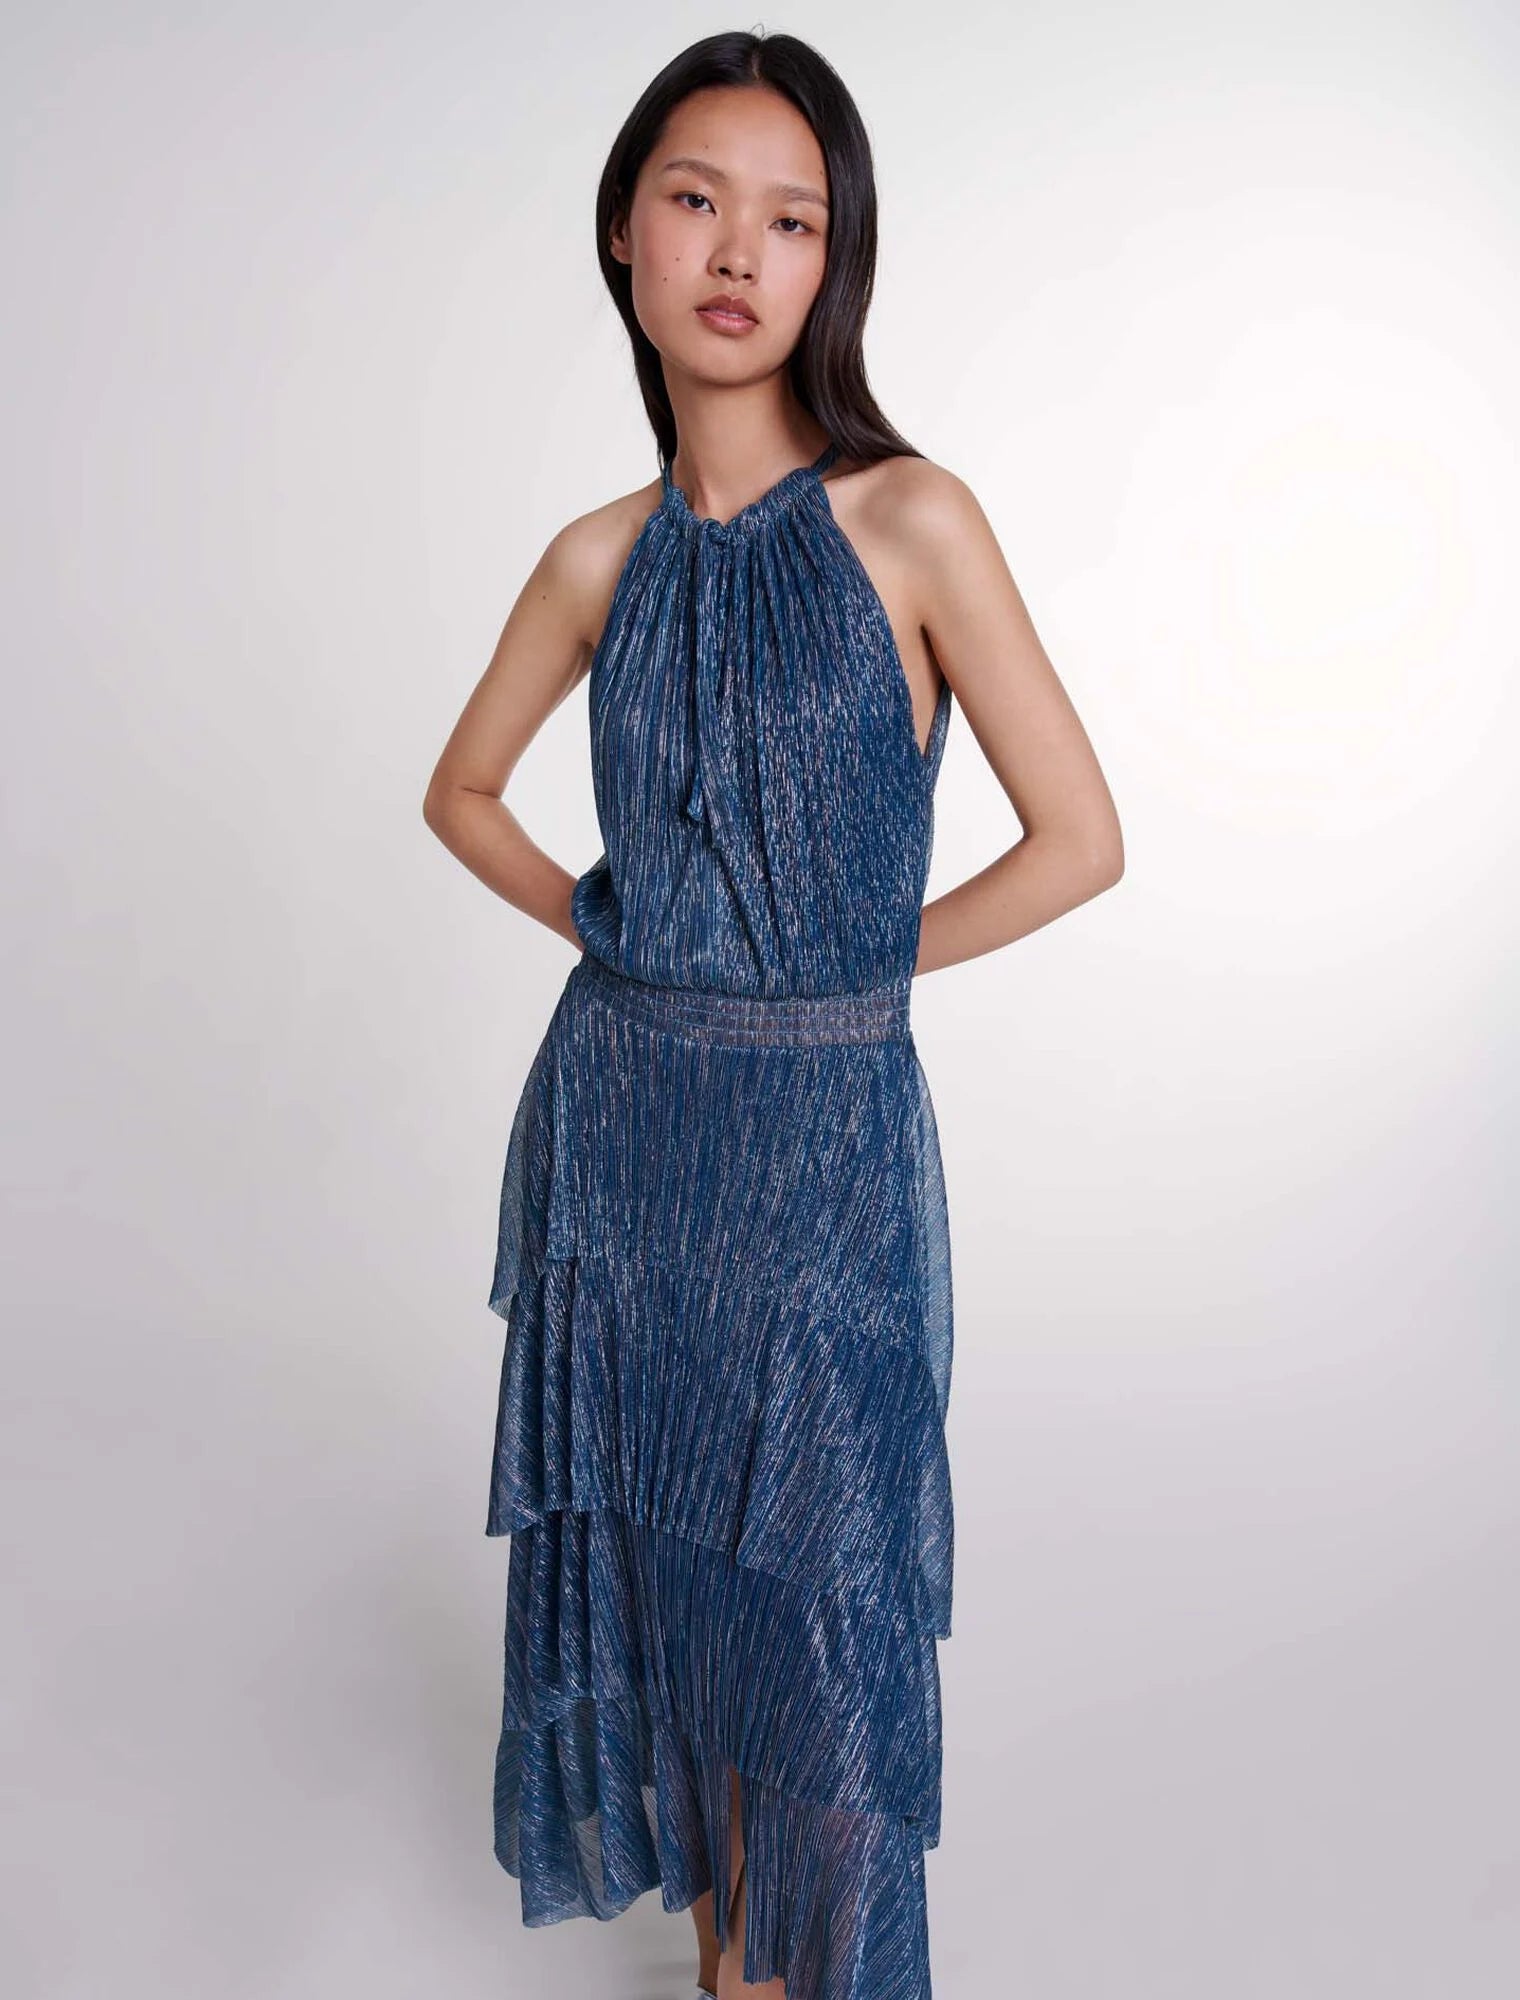 Blue / Grey-Ruffled lame maxi dress